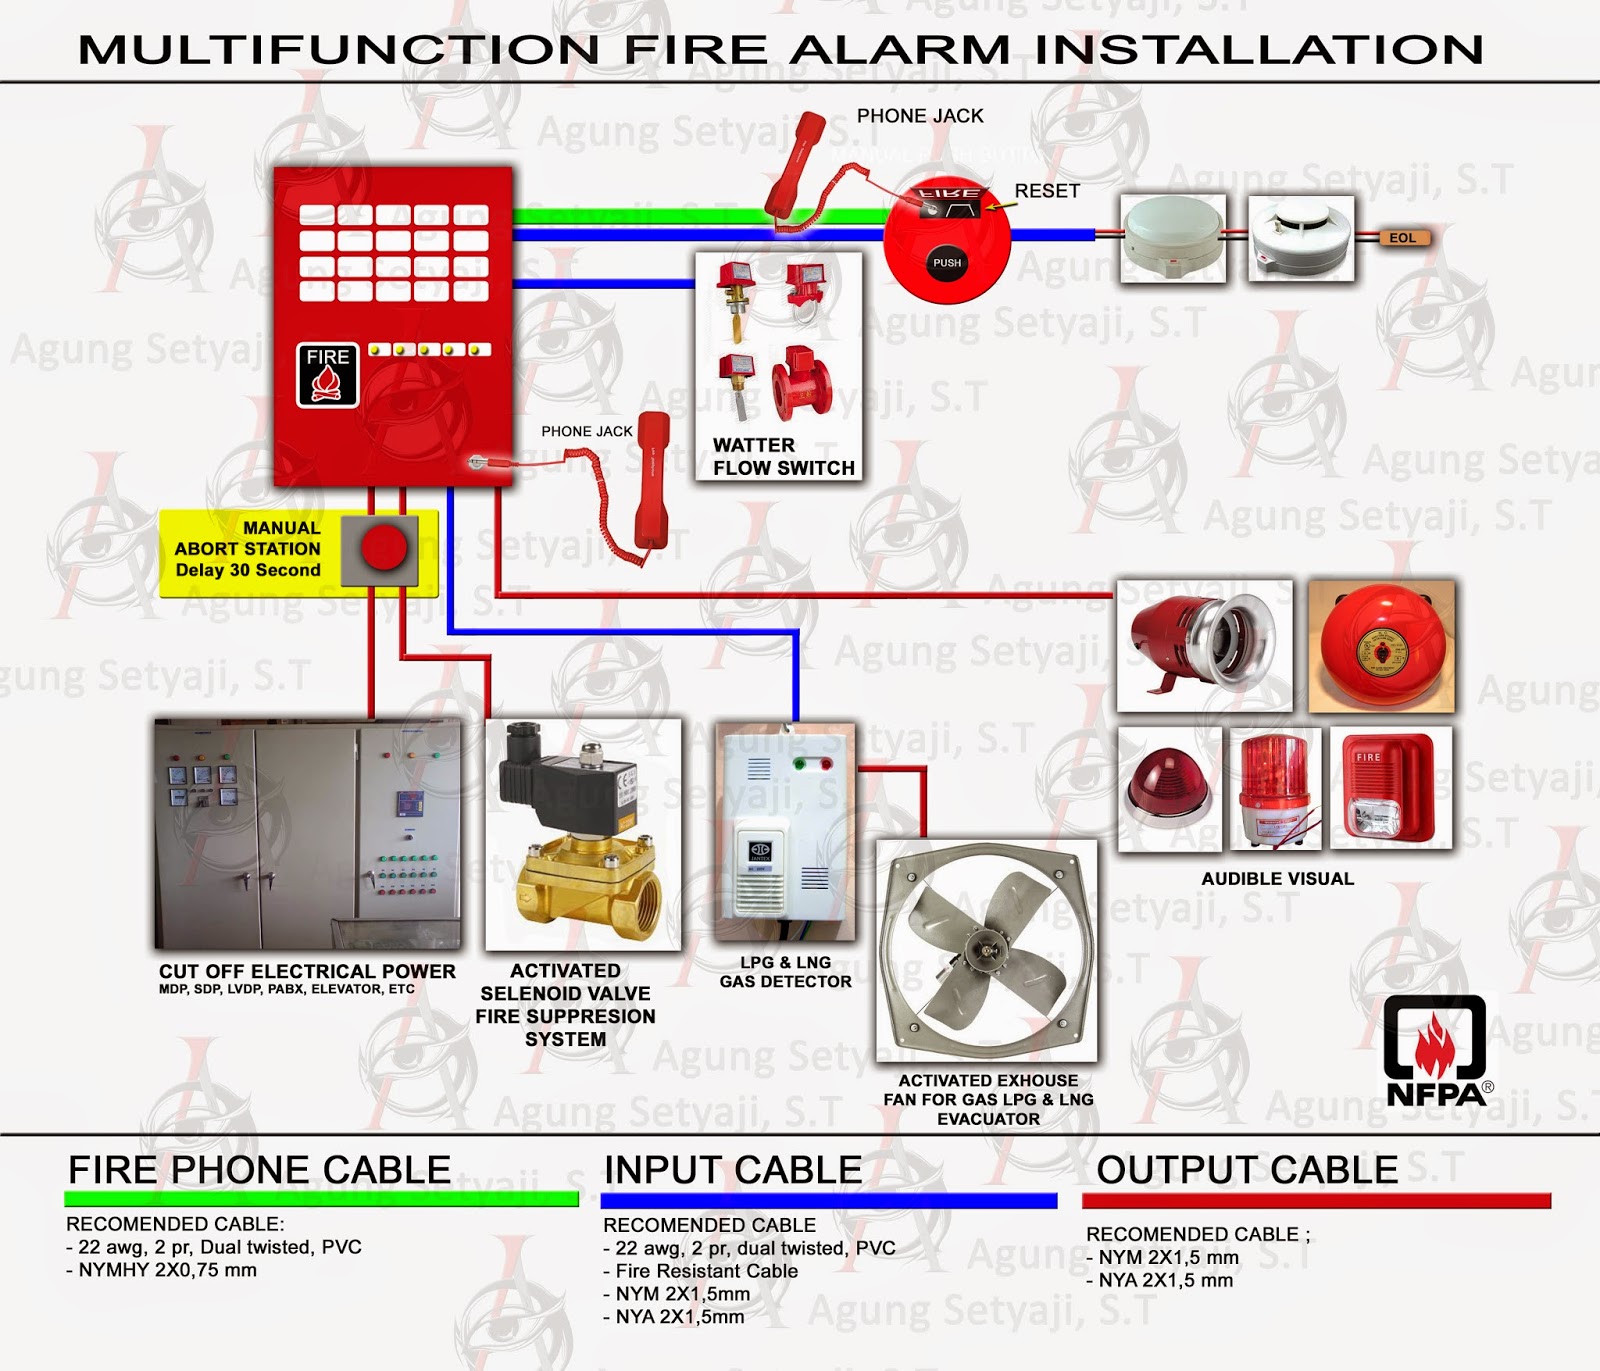 PANTURA FIRE SERVICE Pengembangan Instalasi Fire Alarm 